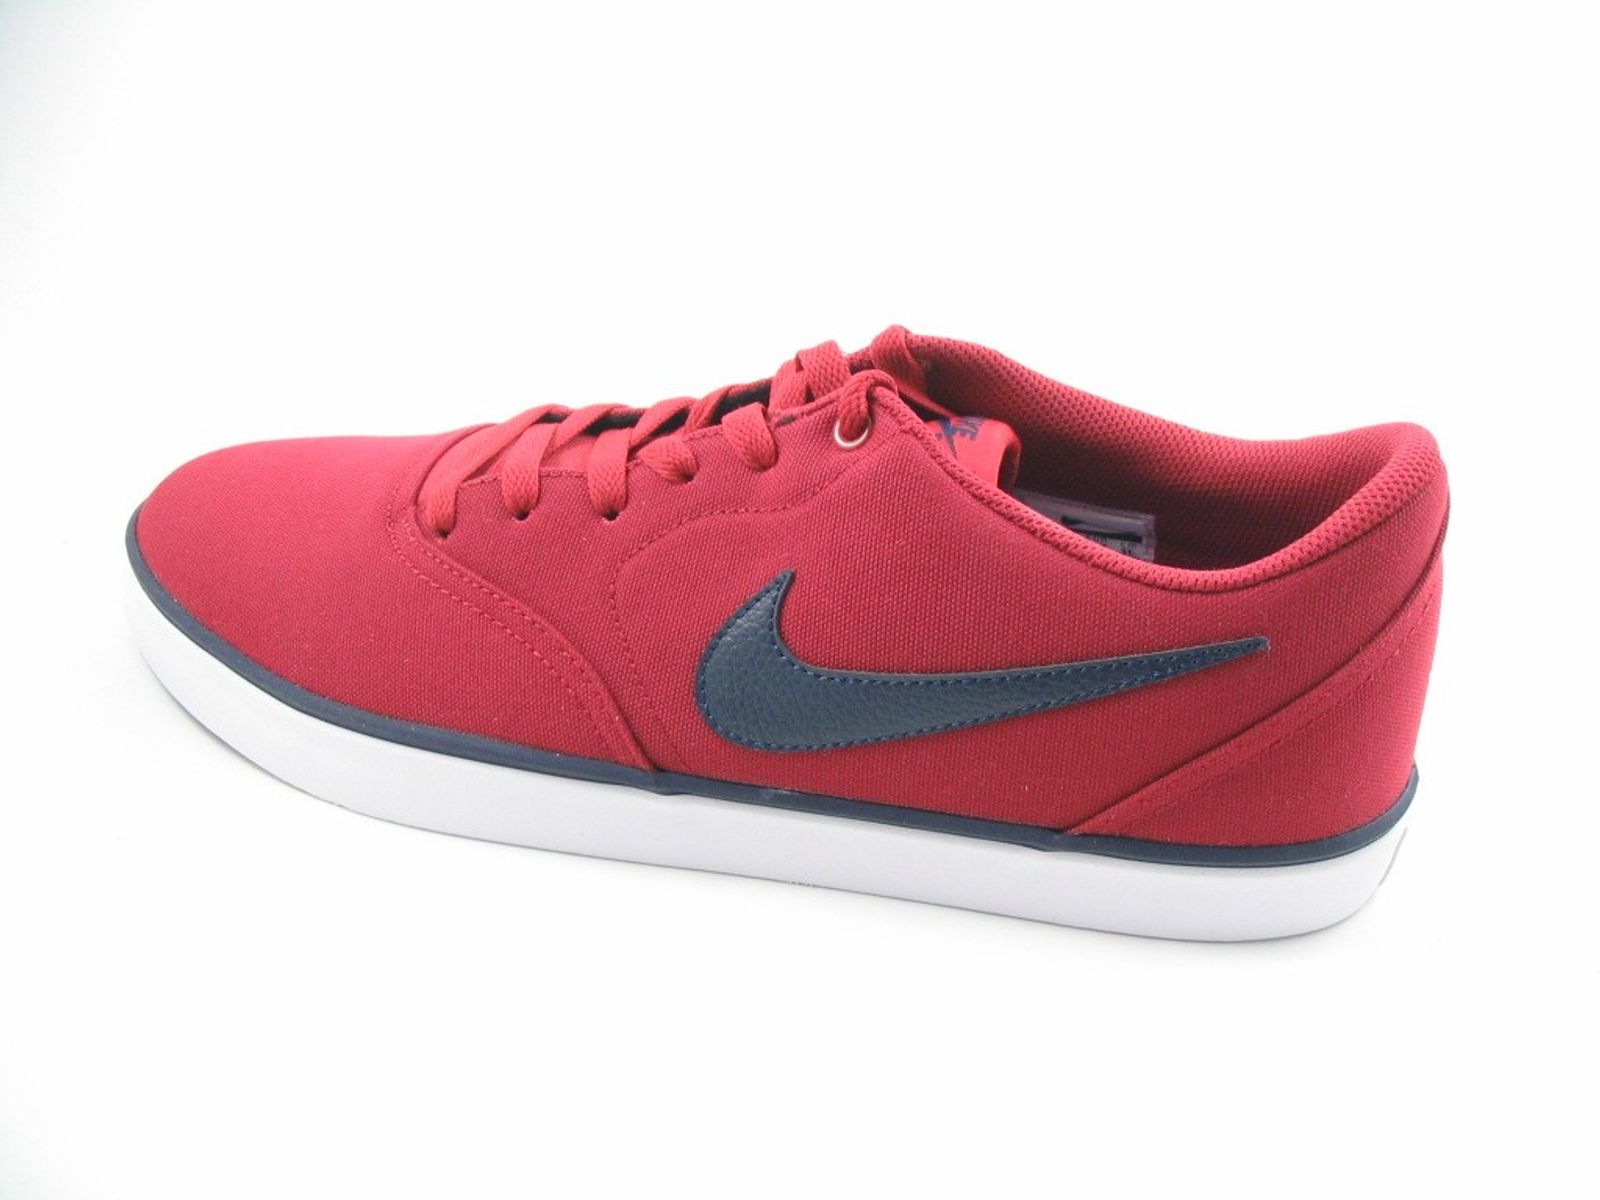 Schuh von Nike, 7